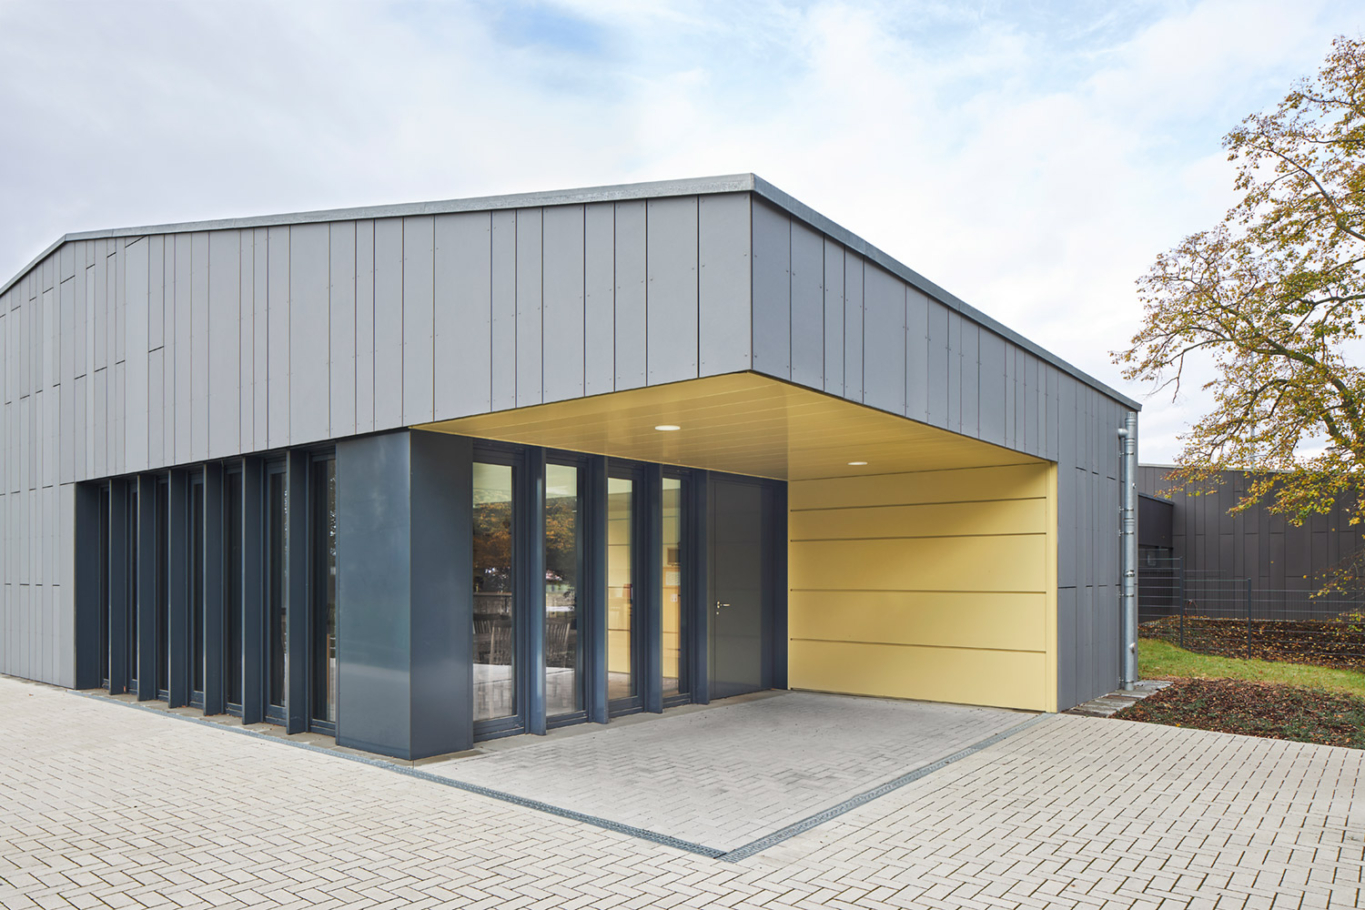 Lioba Schneider Architekturfotografie: Neubau eines Vereinsheims für einen Fussballclub in Monheim. Die Hülle ist aus anthrazitfarbenen Metallpanelen gestaltet.